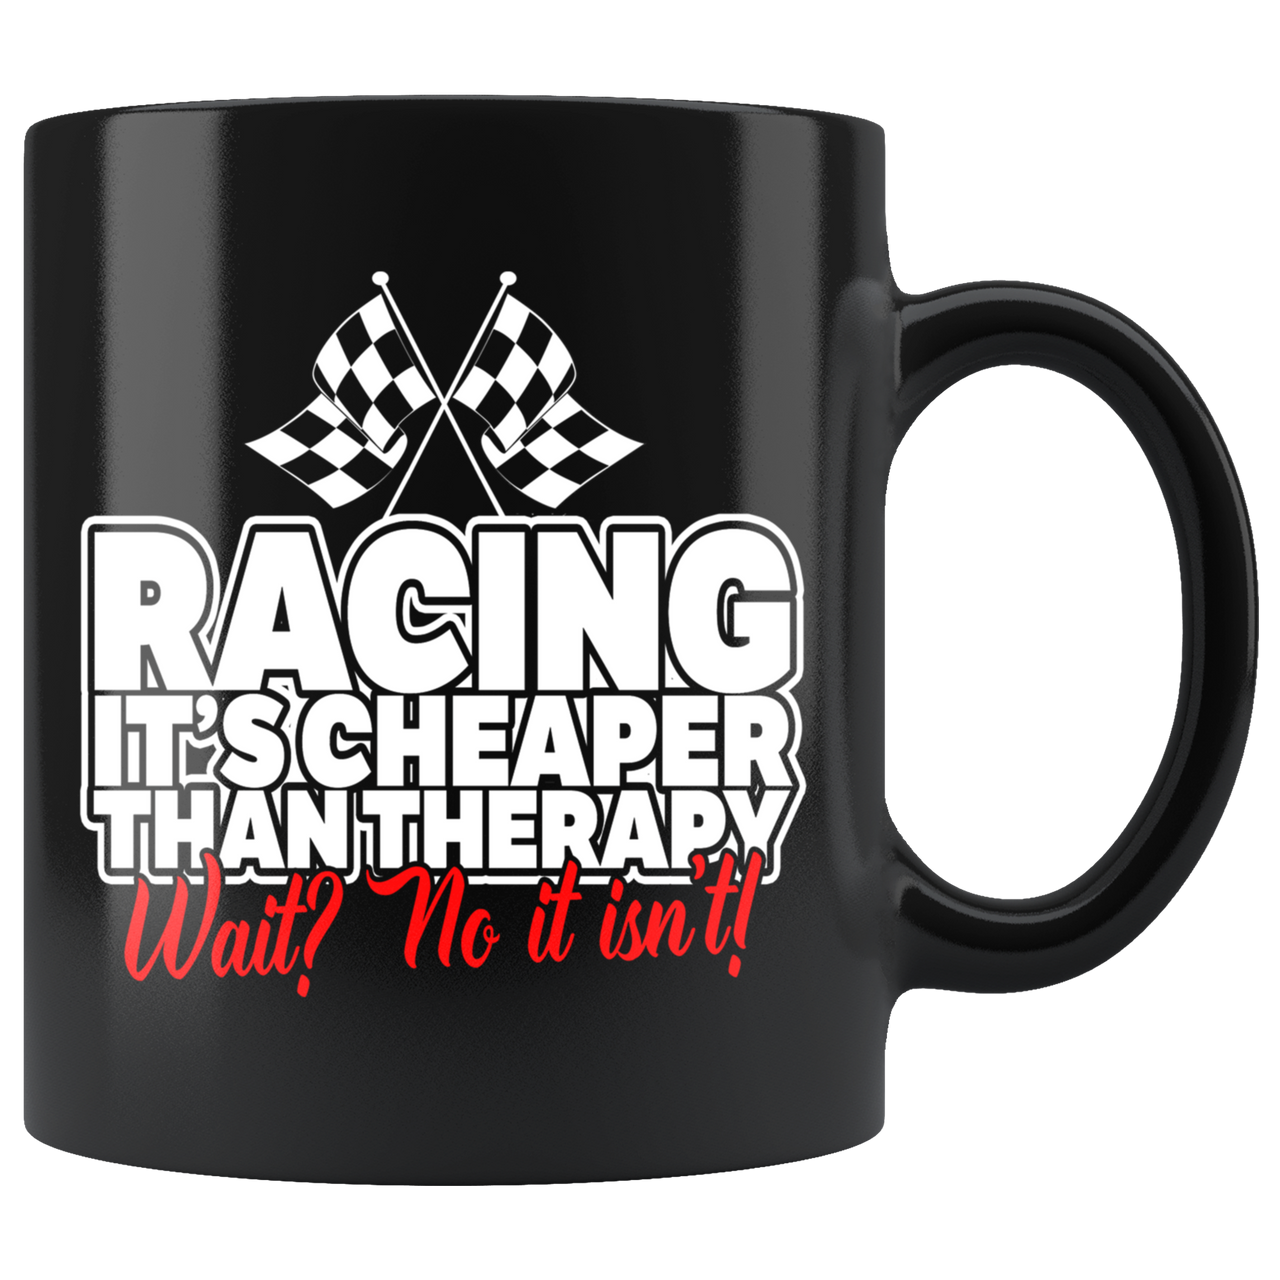 Racing Therapy Mug!